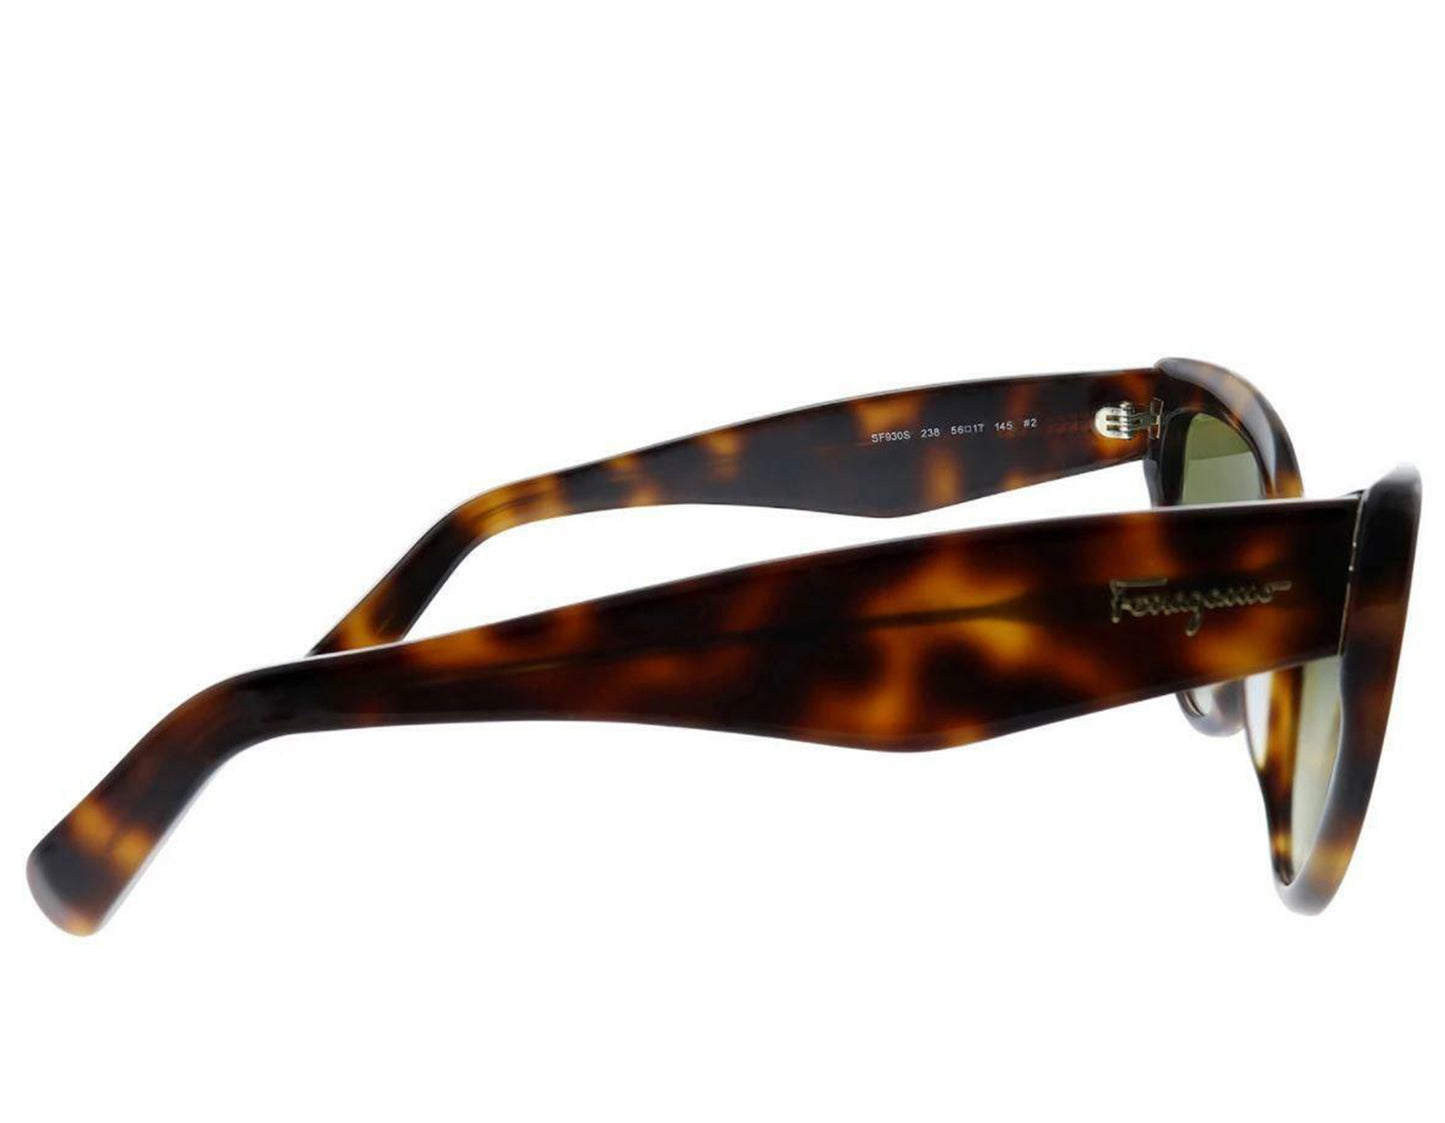 Salvatore Ferragamo SF930S-238-56 56mm New Sunglasses